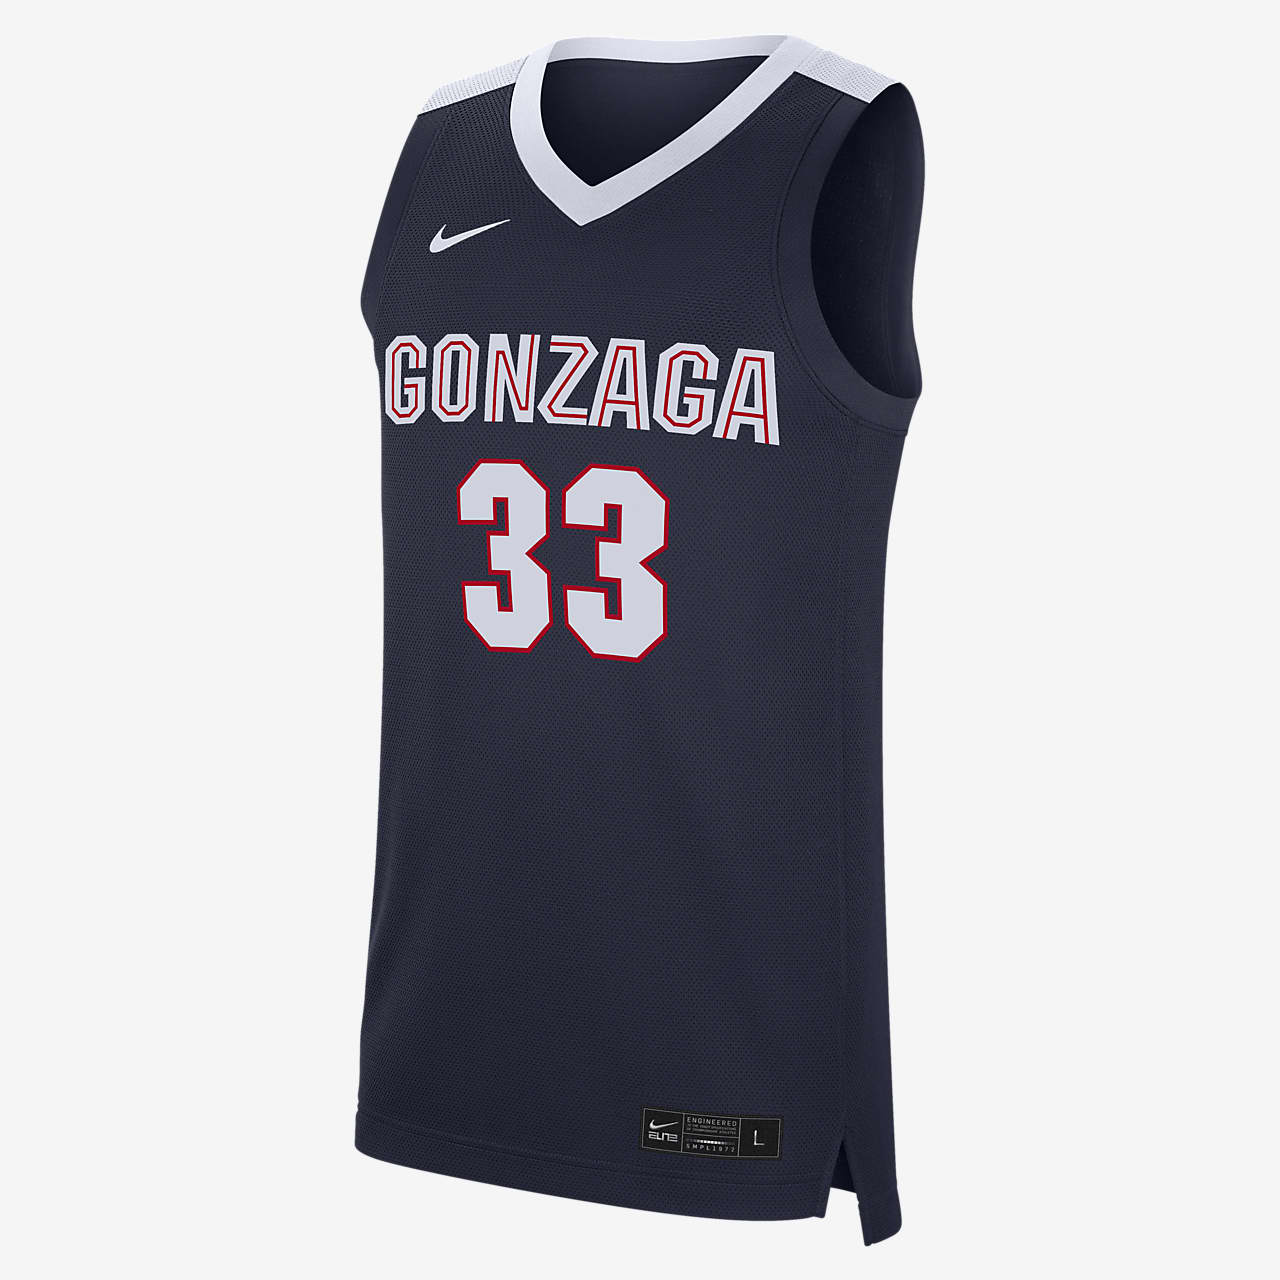 Camiseta de básquetbol para Hombre Nike College Replica (Gonzaga). Nike.com